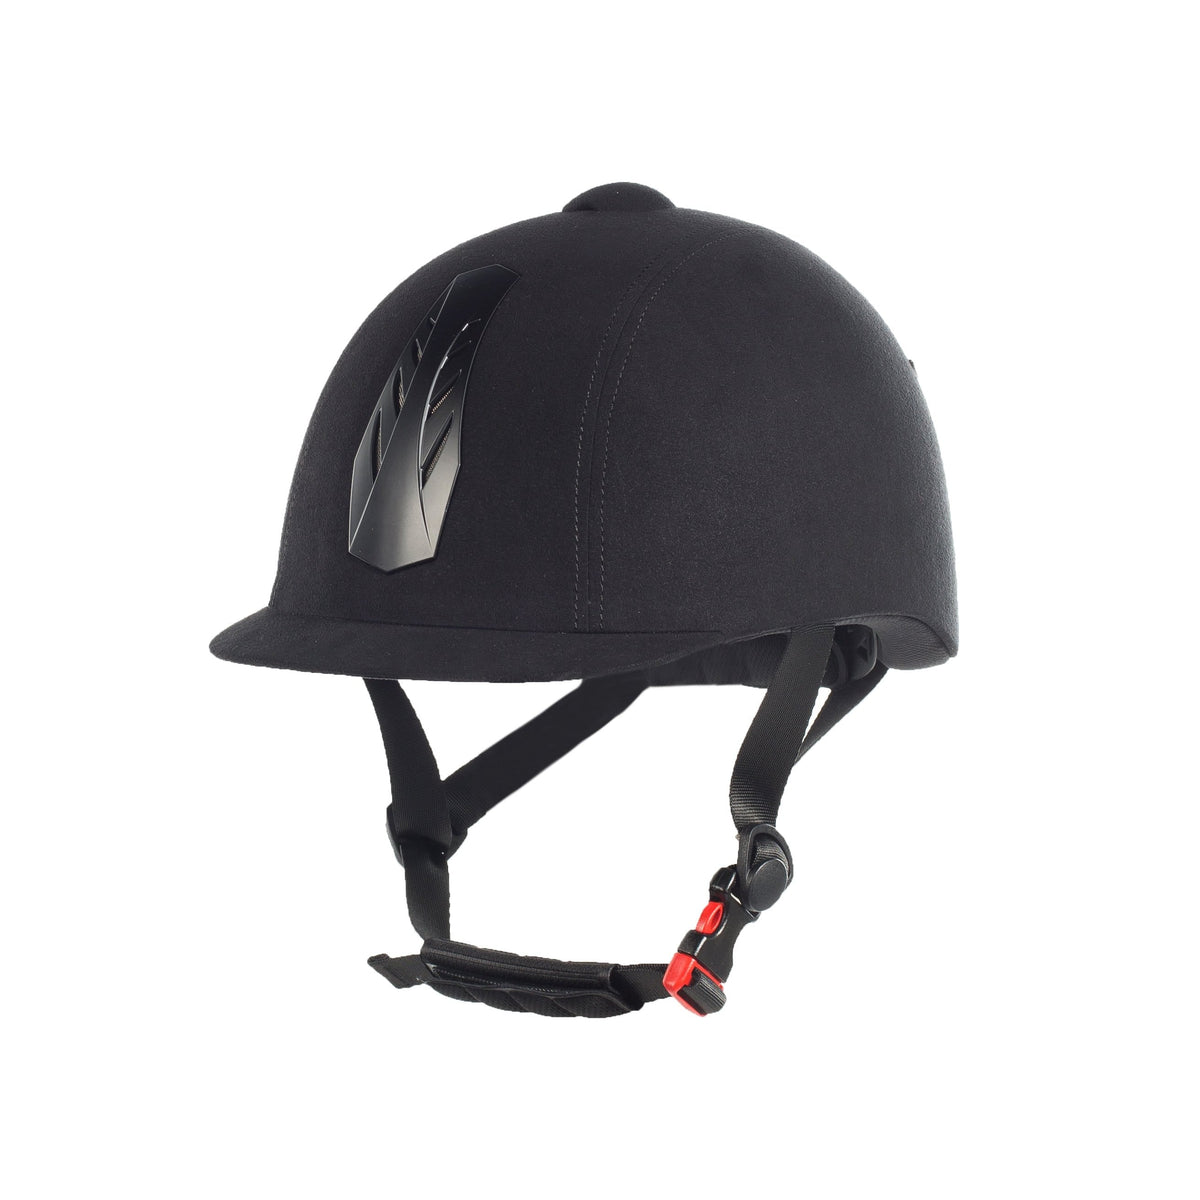 HORZE HELMETS & SAFETY 52-54 / BLACK Horze Triton Helmet